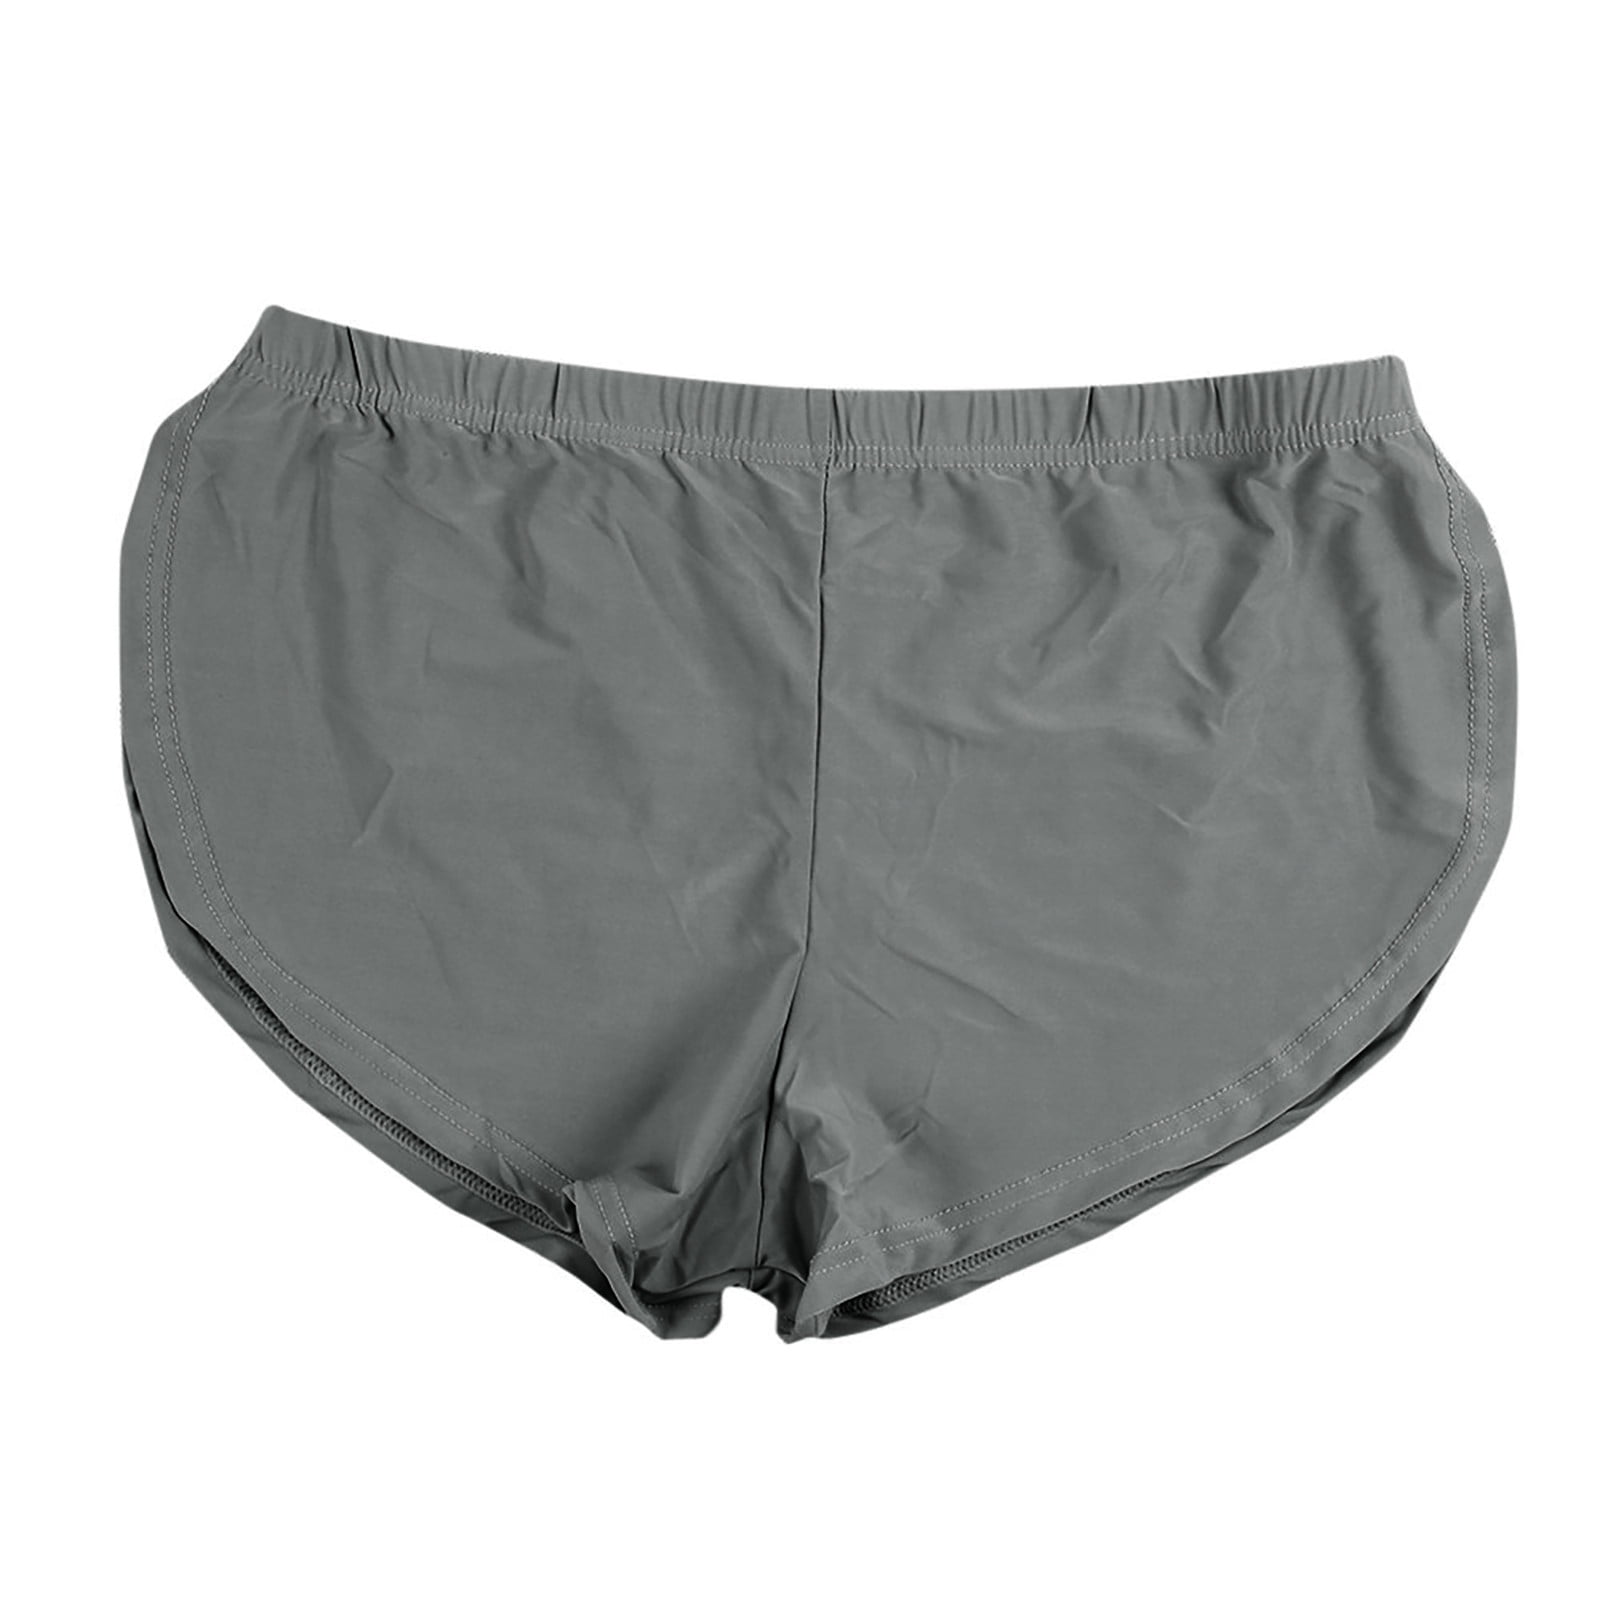 Mixed gray Daily boxer shorts